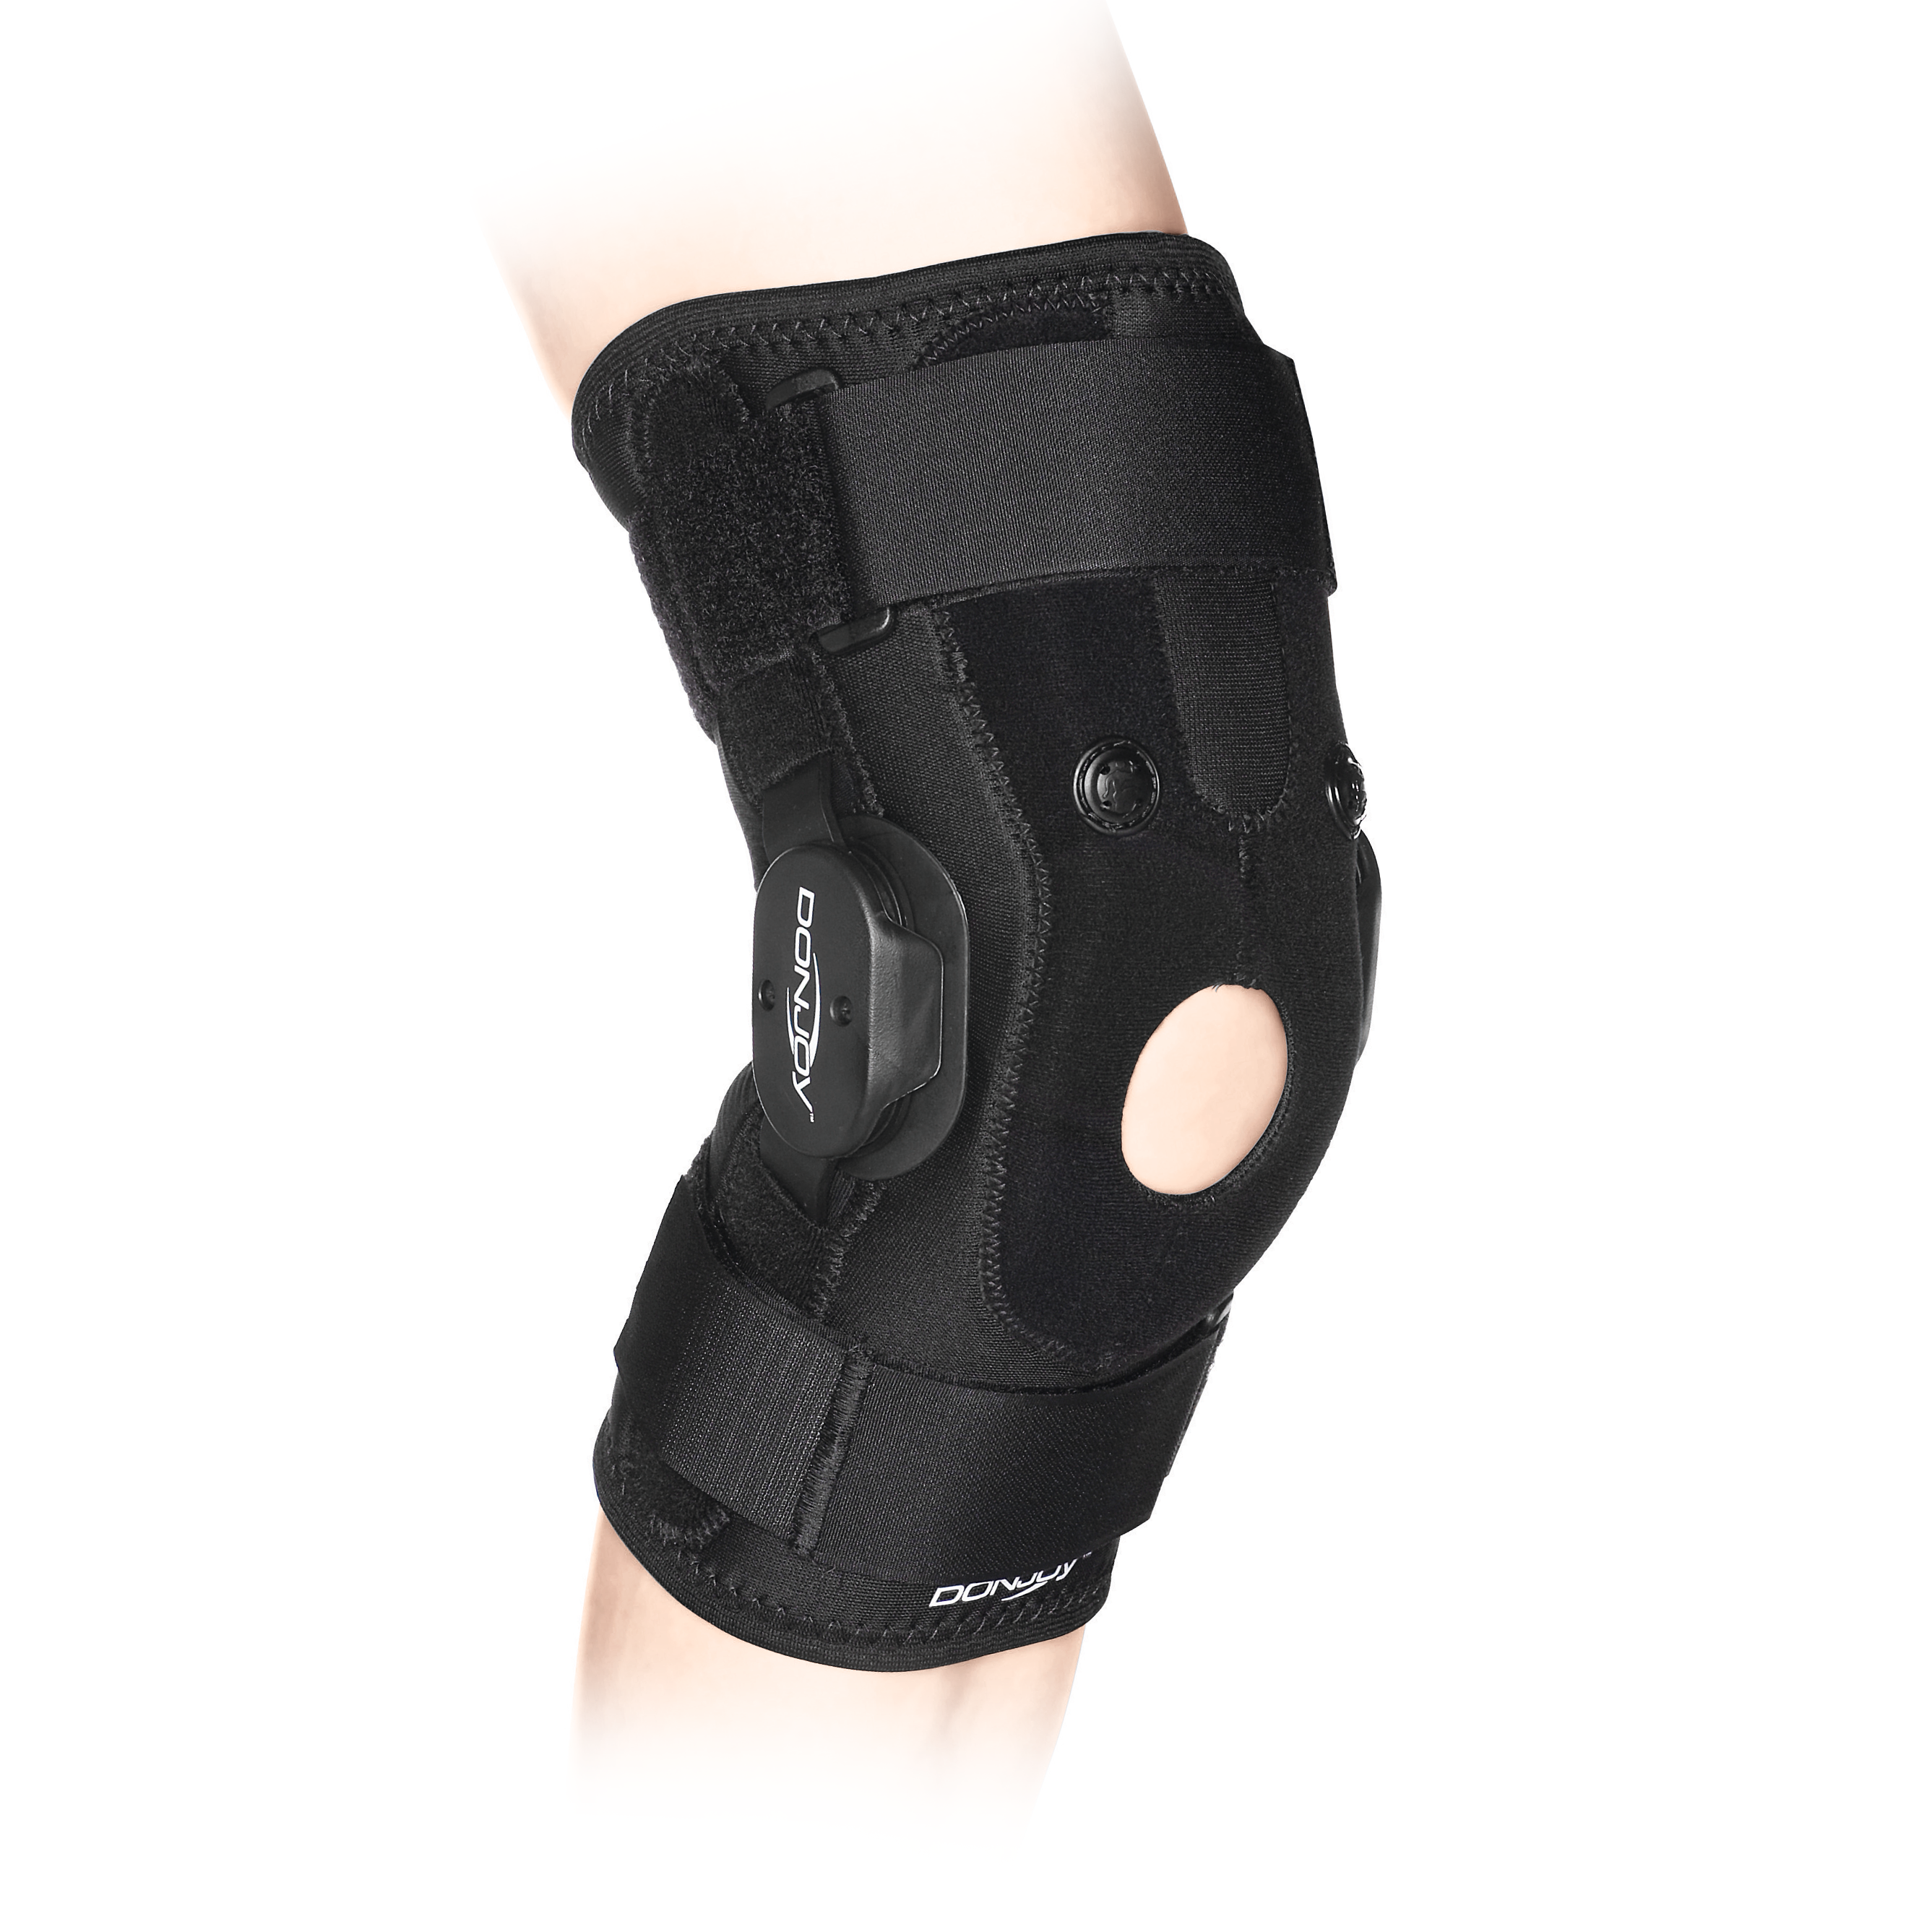 Produktbild Air DONJOY® GS, Knieorthese mit einstellbaren Gelenken zur Korrektur und Sicherung des Patellagleitweges